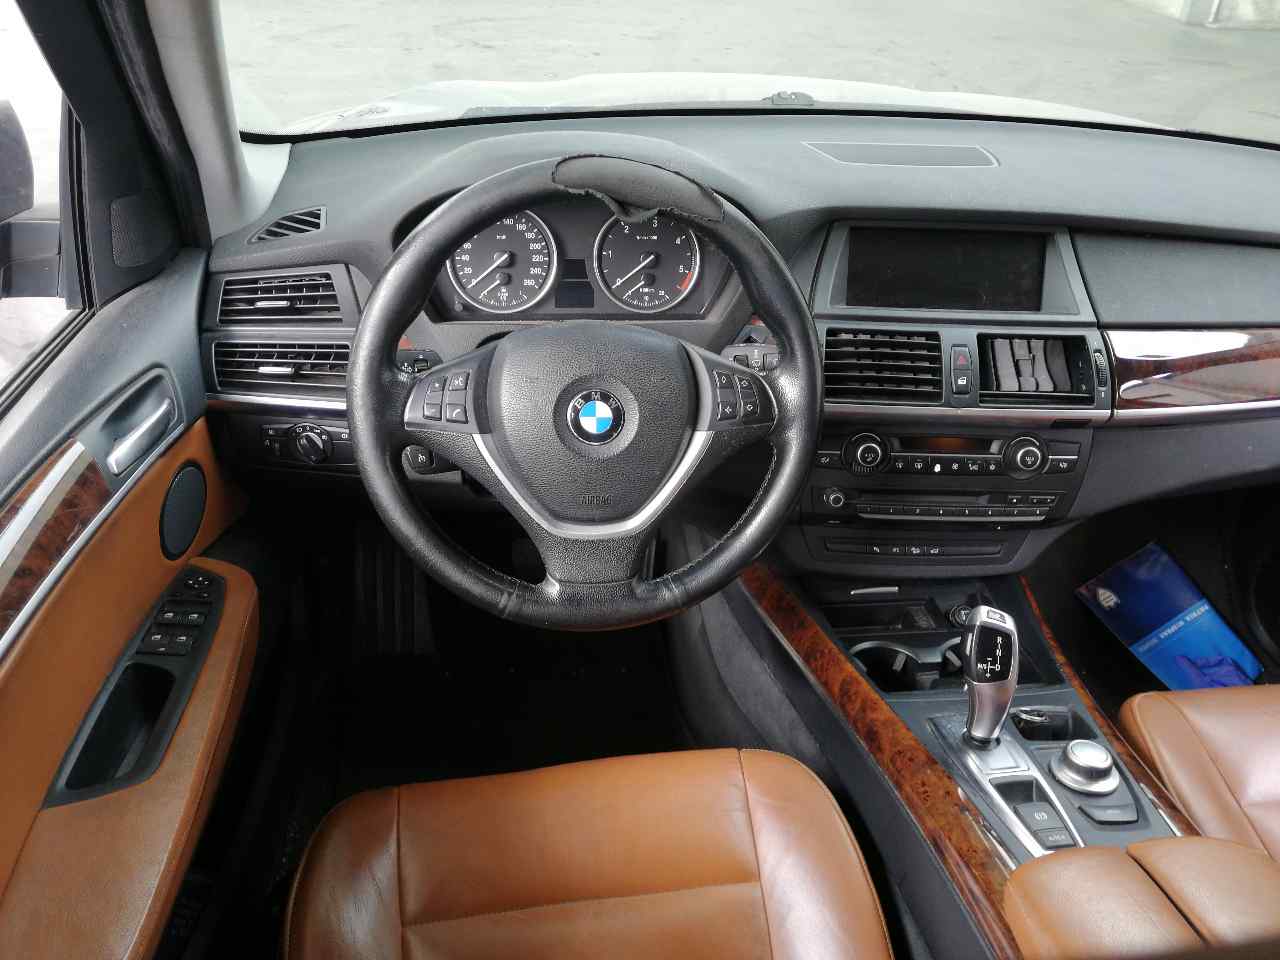 BMW X6 E71/E72 (2008-2012) Другие блоки управления 6778814 24153539